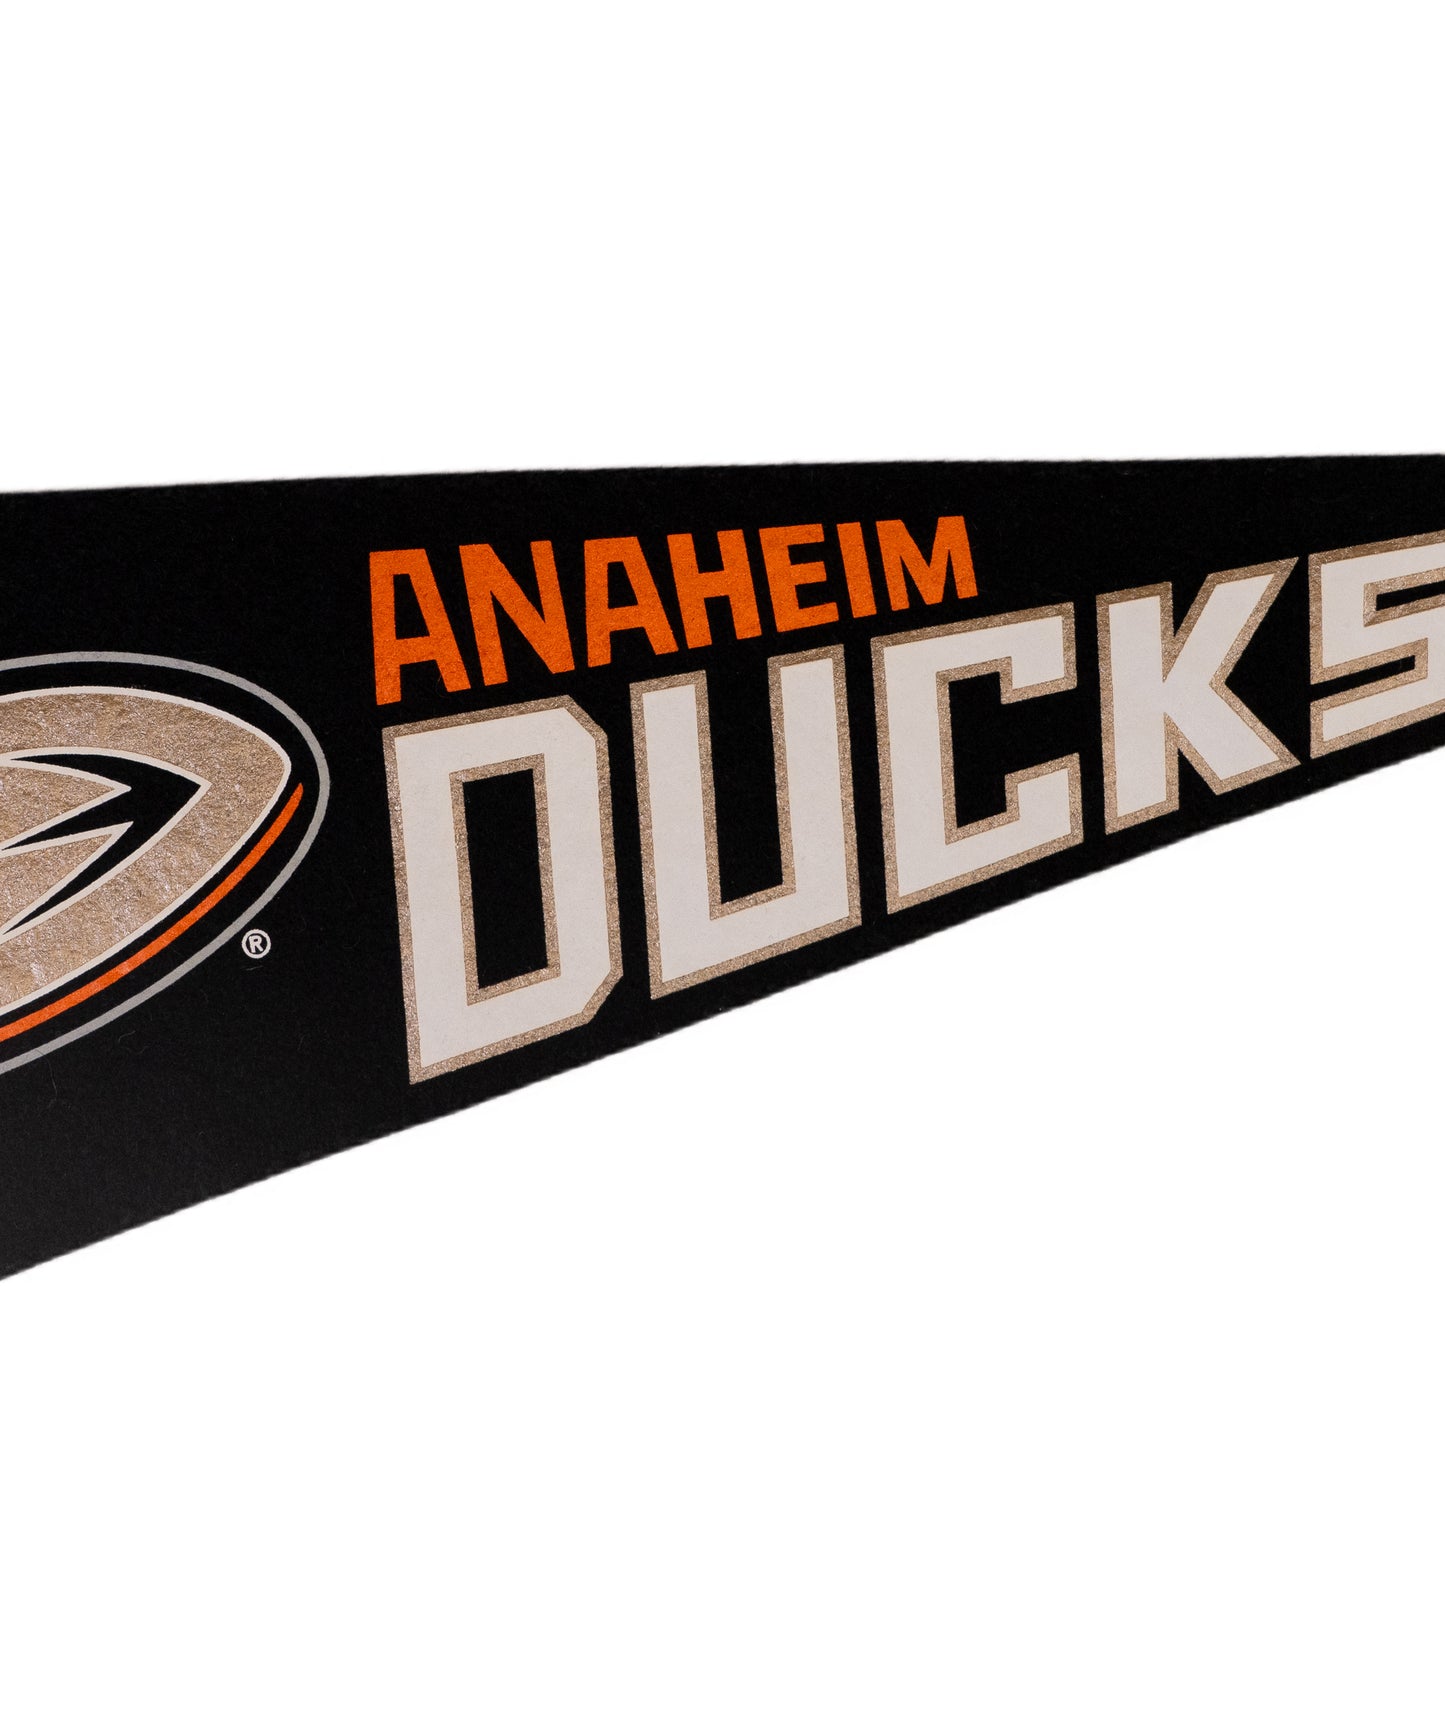 Anaheim Ducks Pennant • NHL x Oxford Pennant